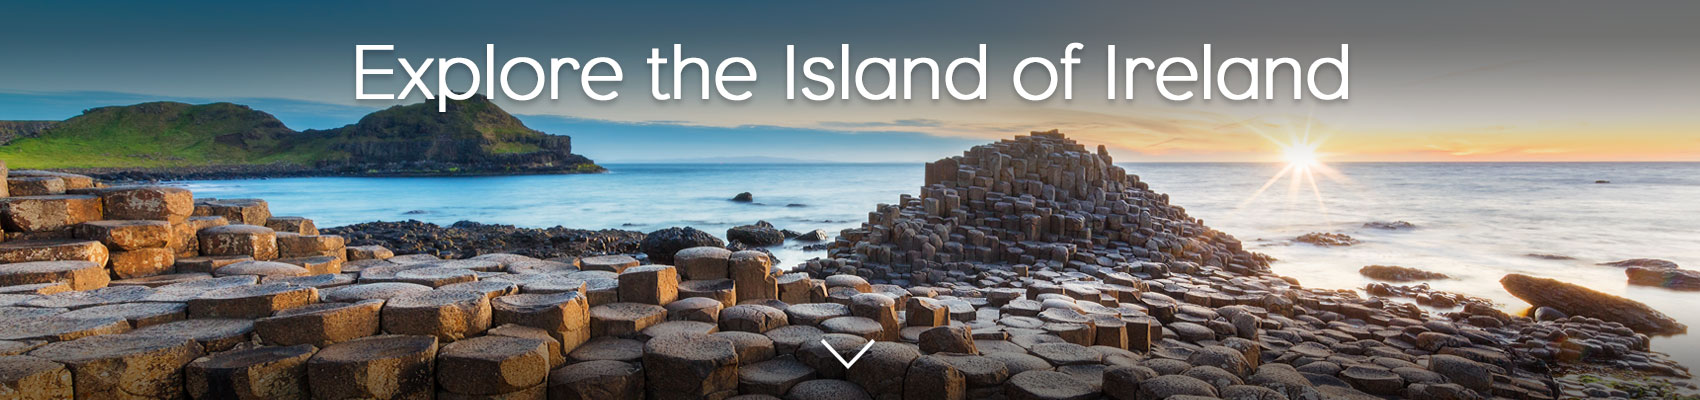 Explore the Island of Ireland